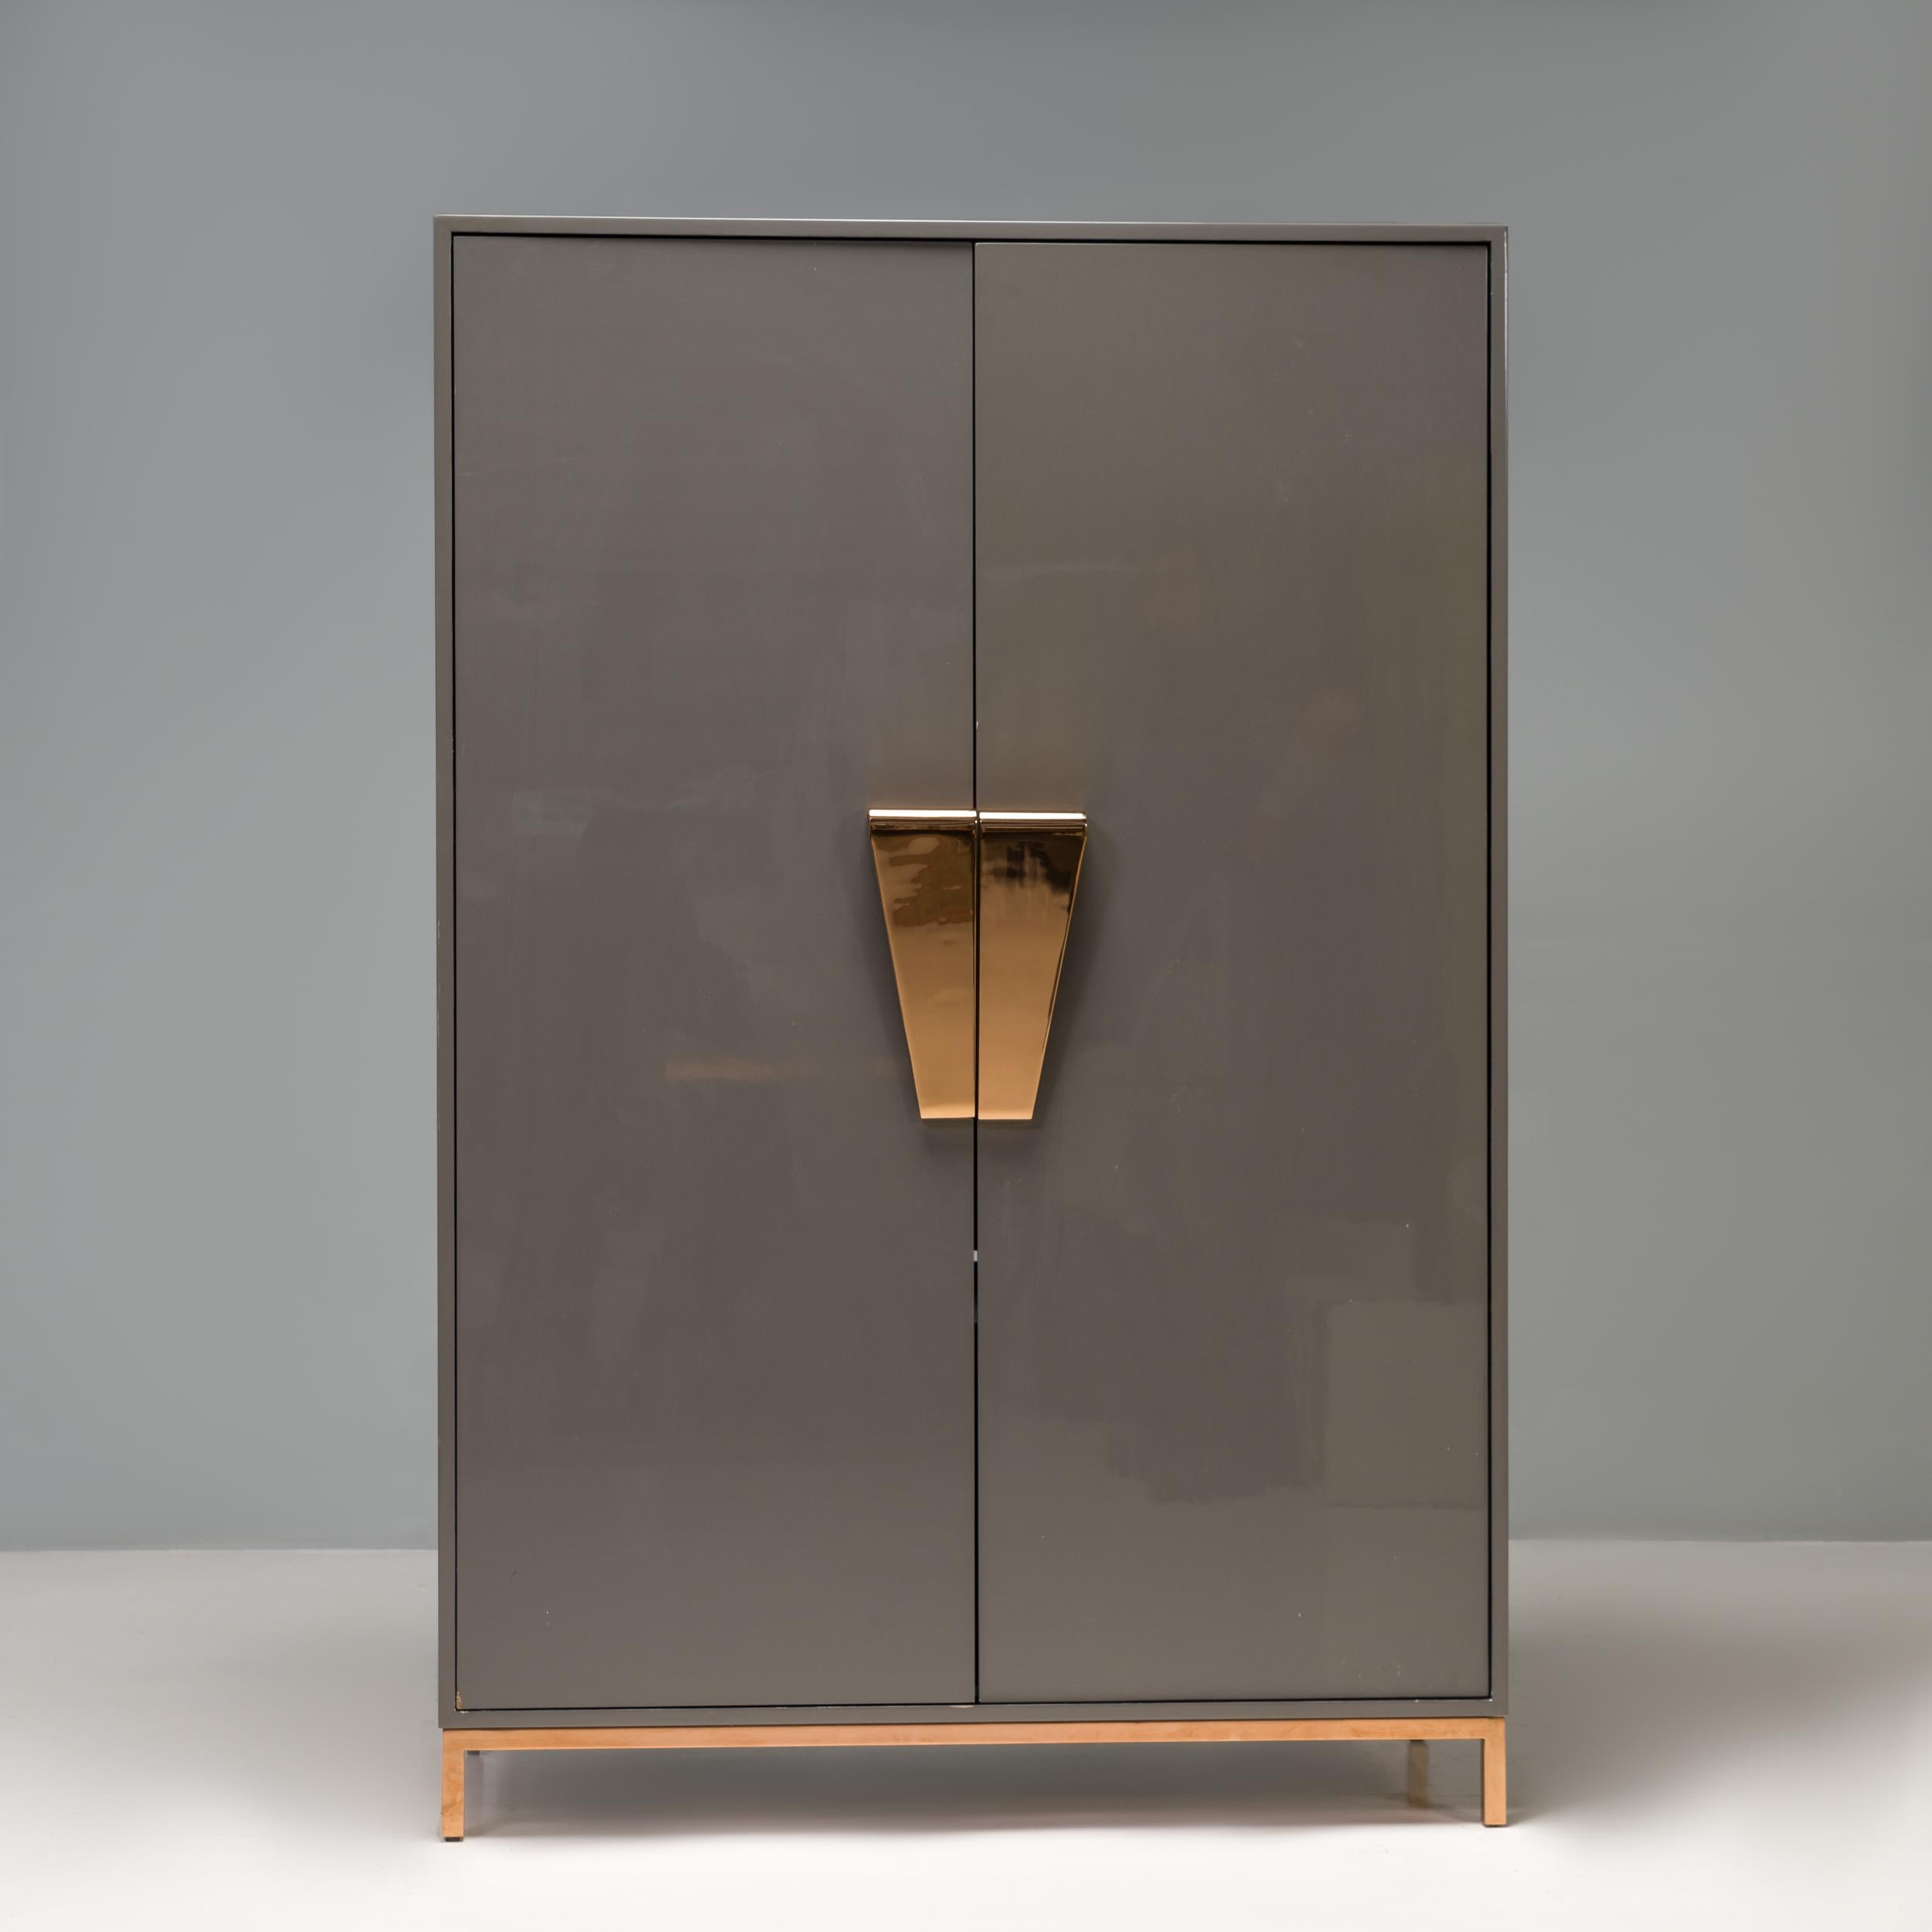 Conçue par la designer d'intérieur britannique Kelly Hoppen dans le cadre de sa gamme de meubles signature, l'armoire Shield offre une solution de rangement moderne et élégante.

Construit en bois laqué gris foncé, le meuble repose sur de fins pieds